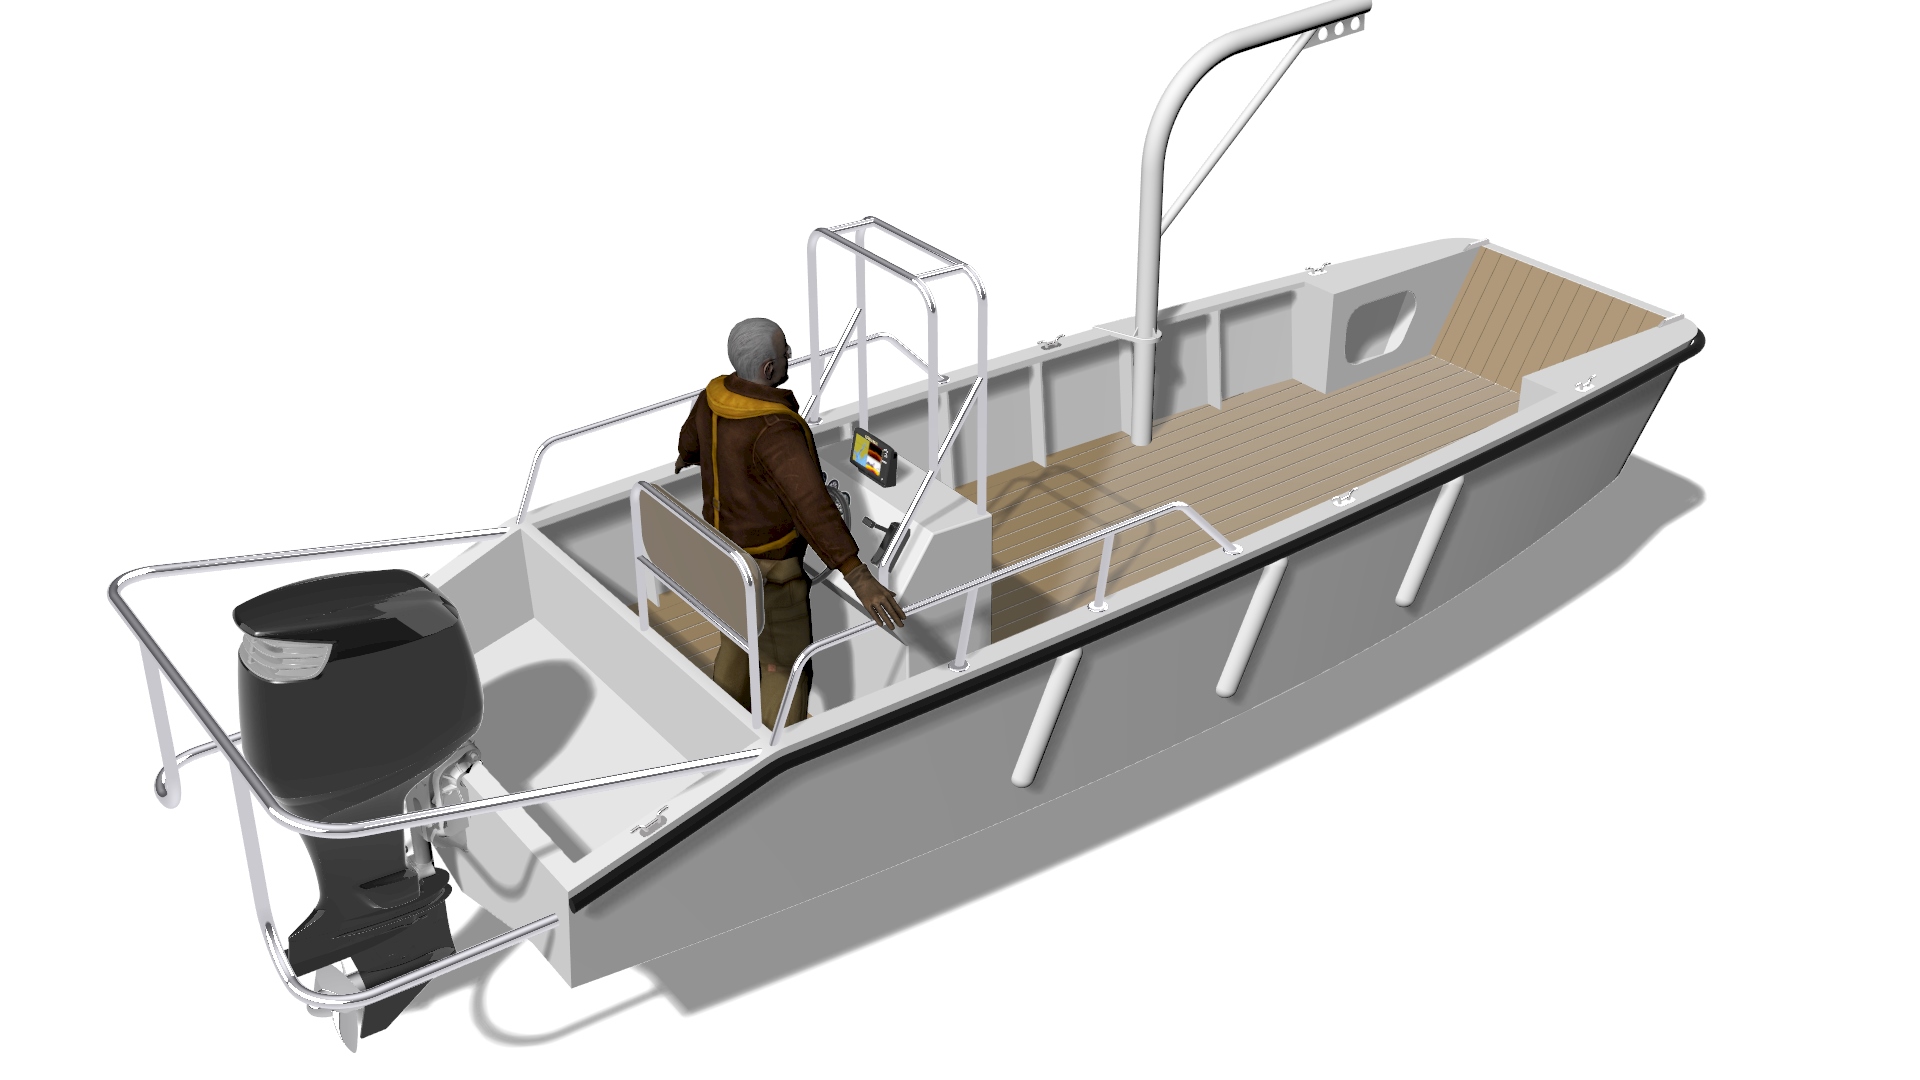 Проектирование многофункционального маломерного судна для работ в прибрежной акватории на основе эскизного проекта собственной разработки